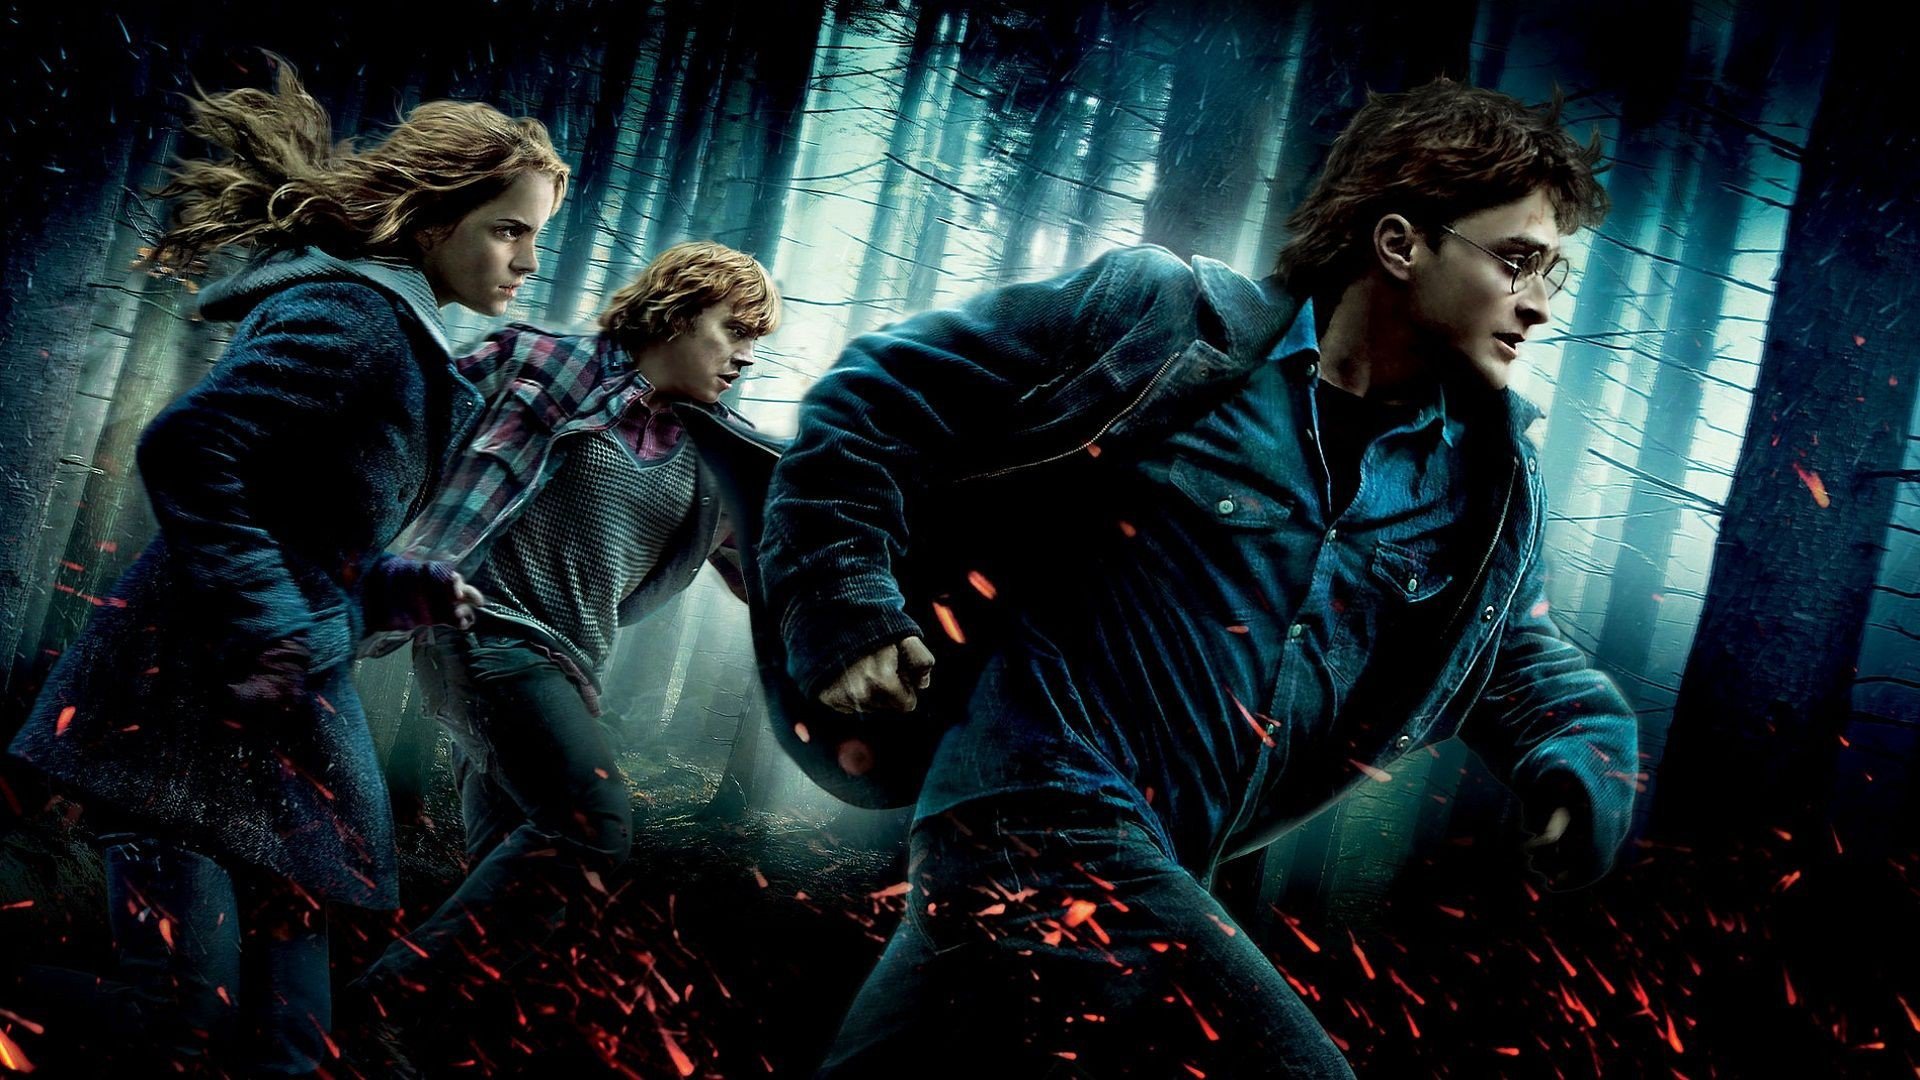 Image from the movie "Harry Potter e os Talismãs da Morte Parte 1"